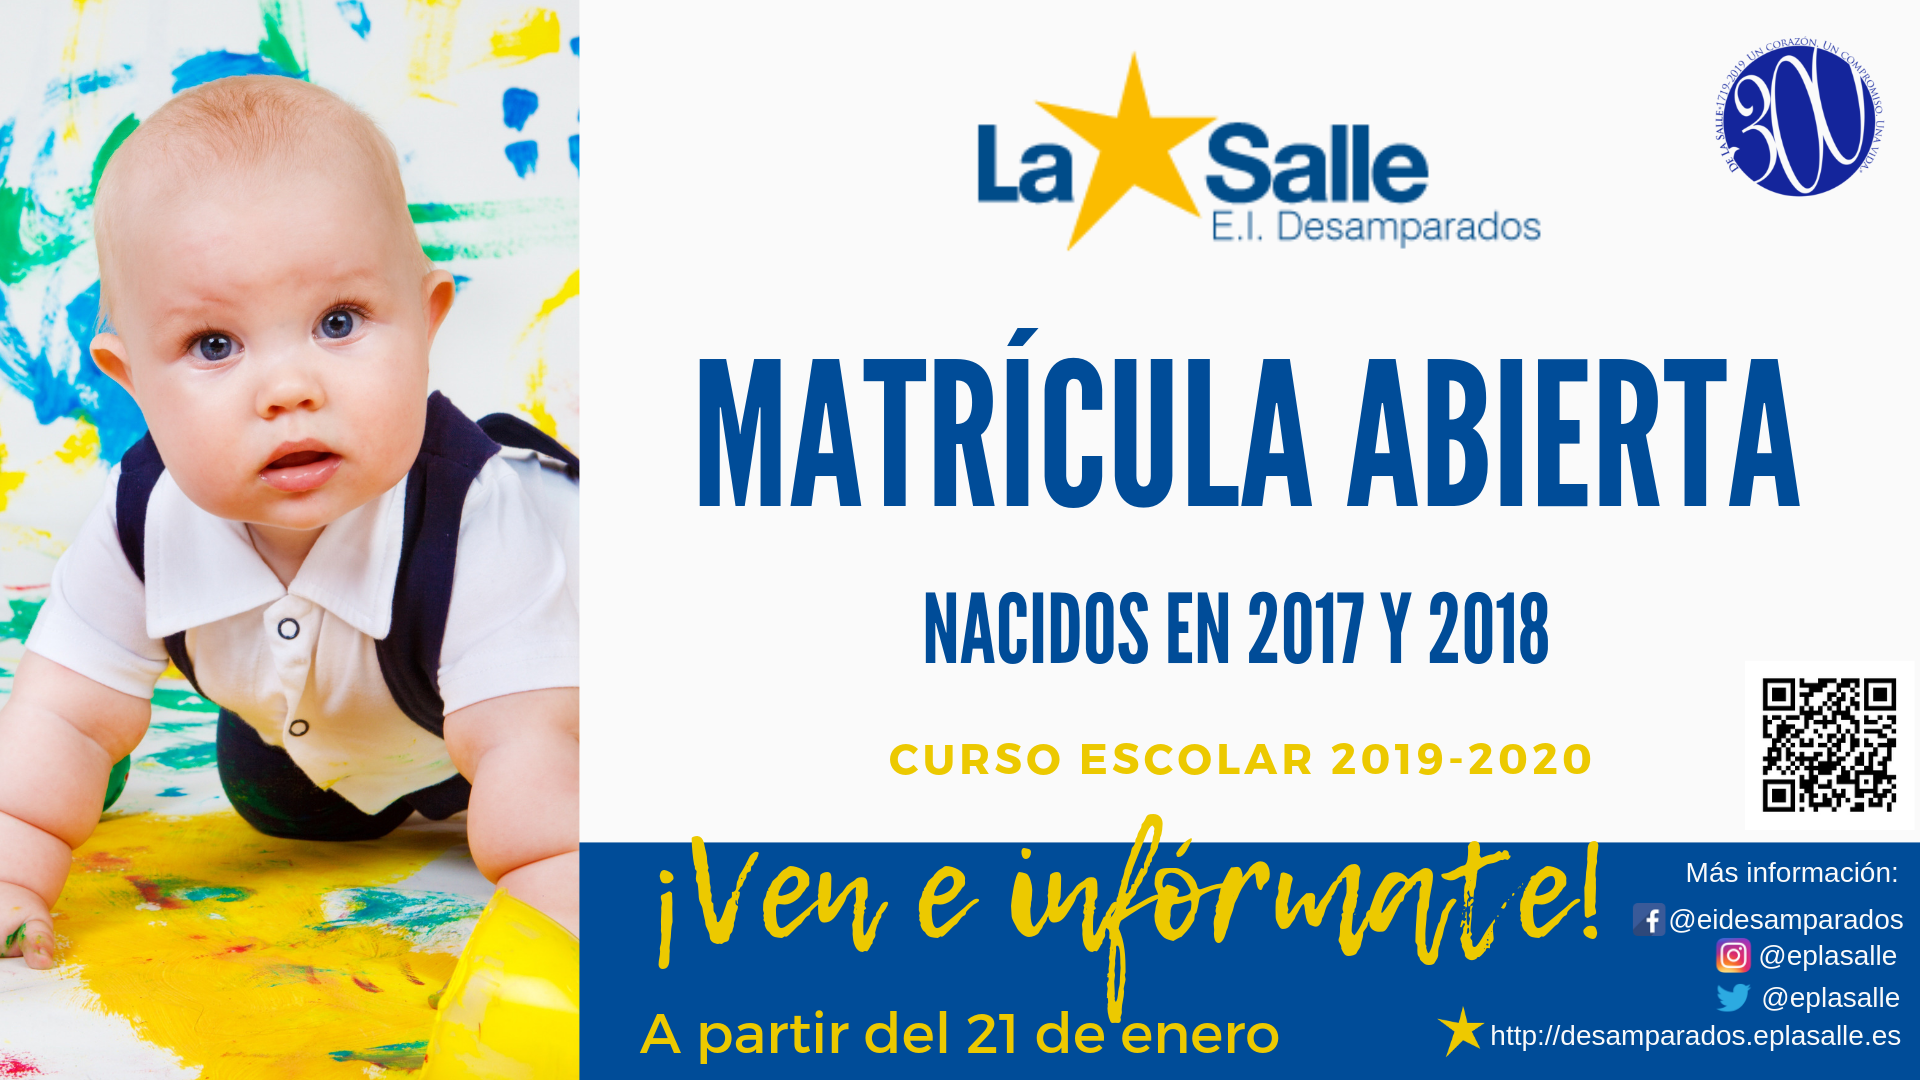 Matrícula abierta en la Escuela Infantil Desamparados-La Salle para el curso 2019-2020